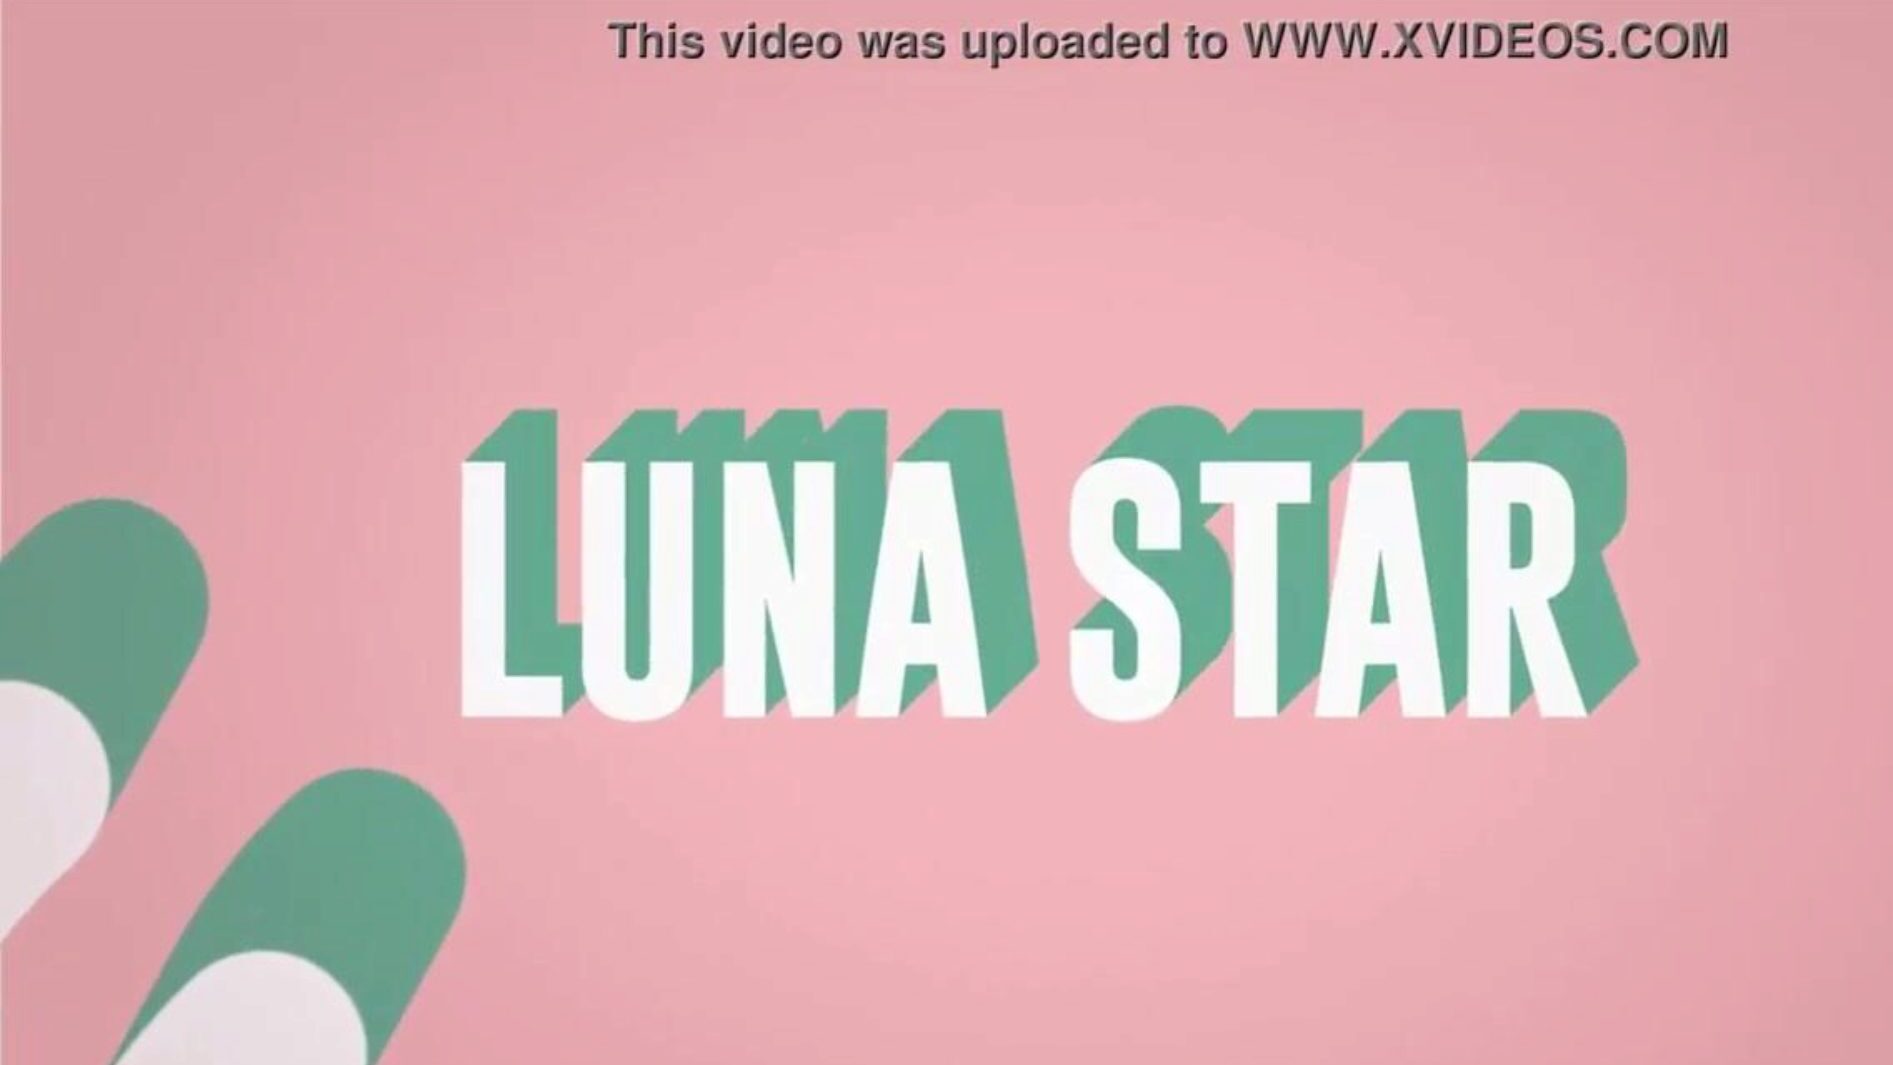 Es ist mein verdammtes WLAN: Brazzers Gig mit Luna Star; siehe vollständig unter www.zzfull.com/luna